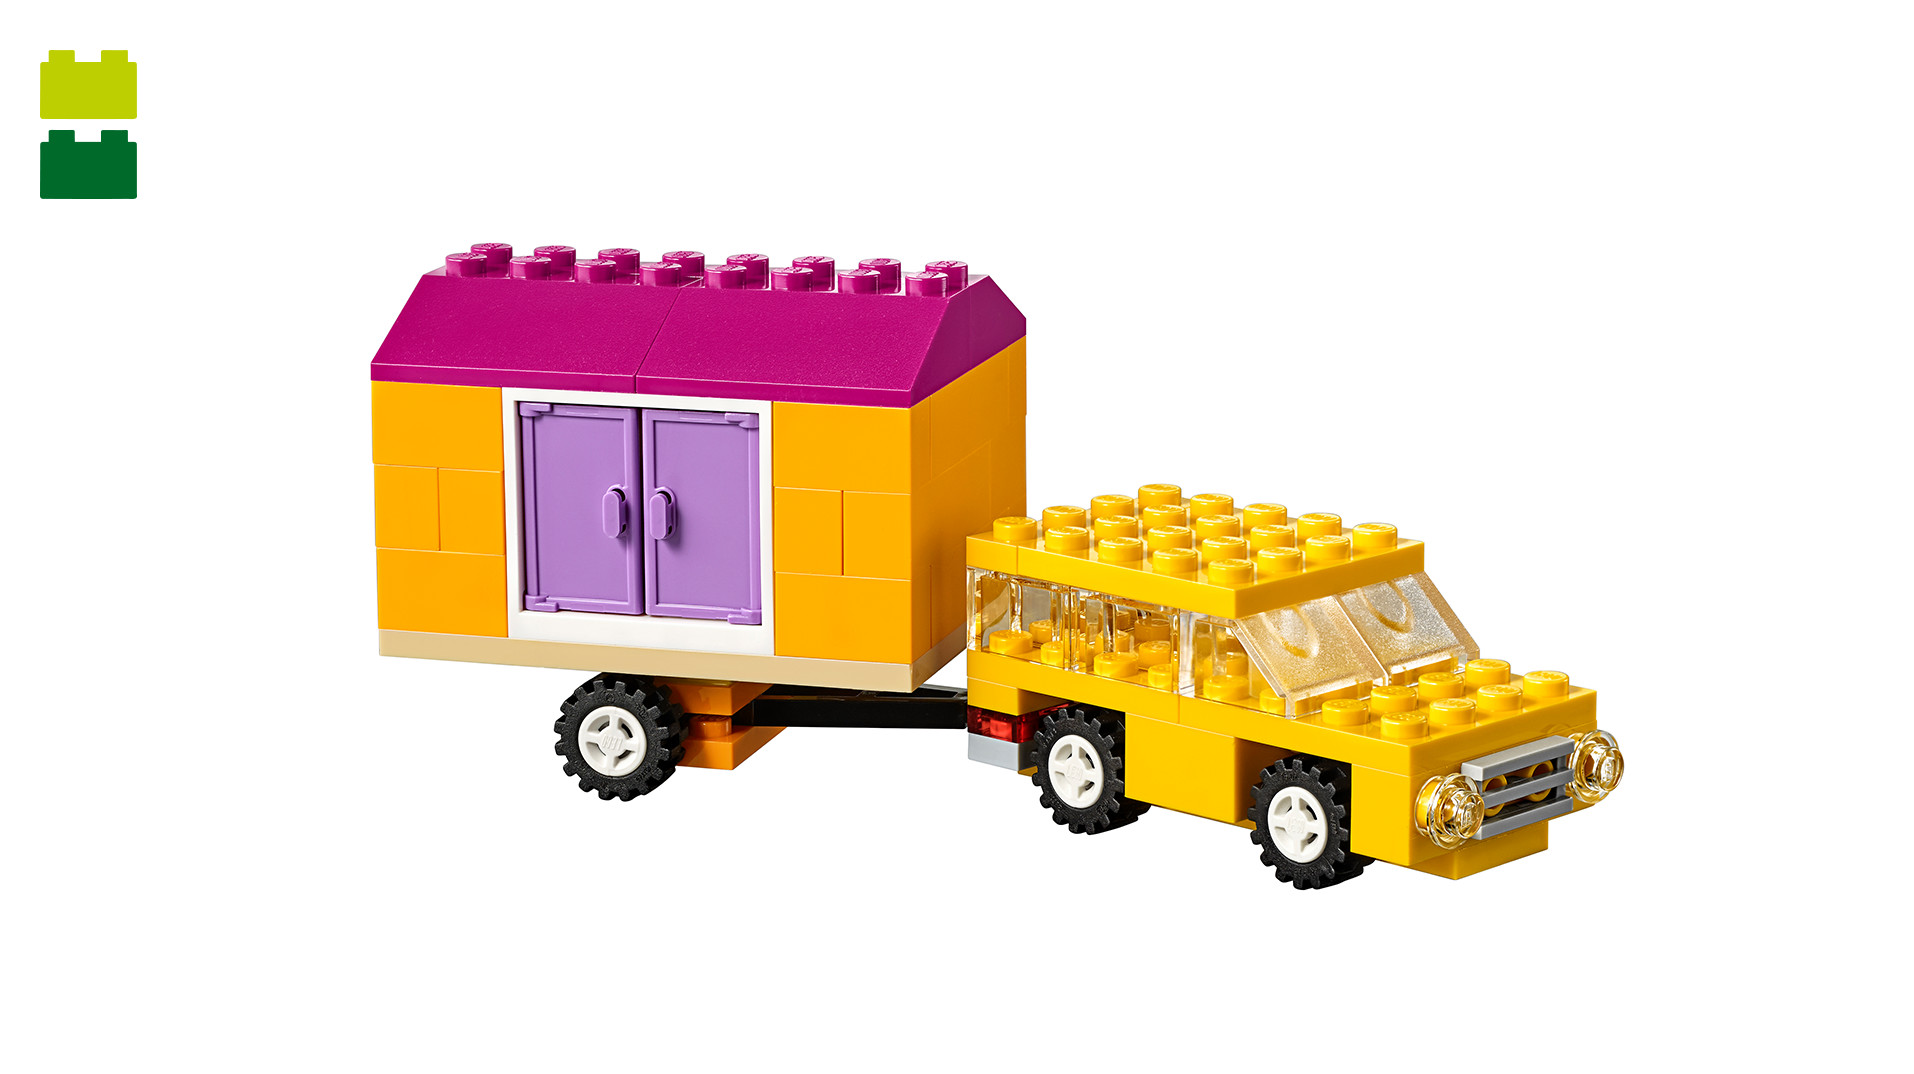 10715 – LEGO® Bricks on a Roll 